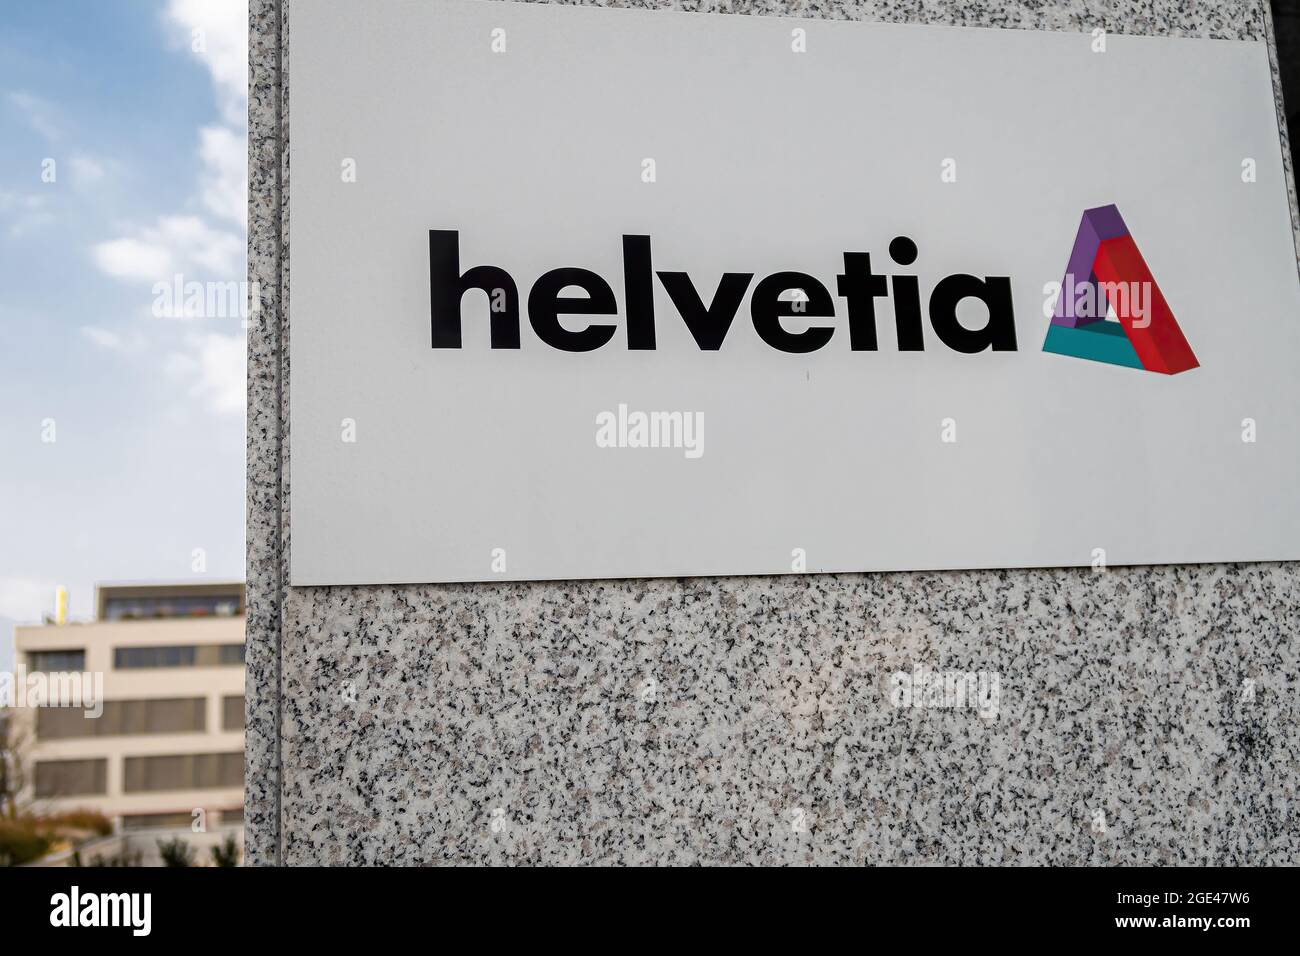 VADUZ, LIECHTENSTEIN - 28 MARS 2020 : Helvetia est passée de diverses compagnies d'assurance suisses et étrangères à un groupe d'assurance réussi. Banque D'Images